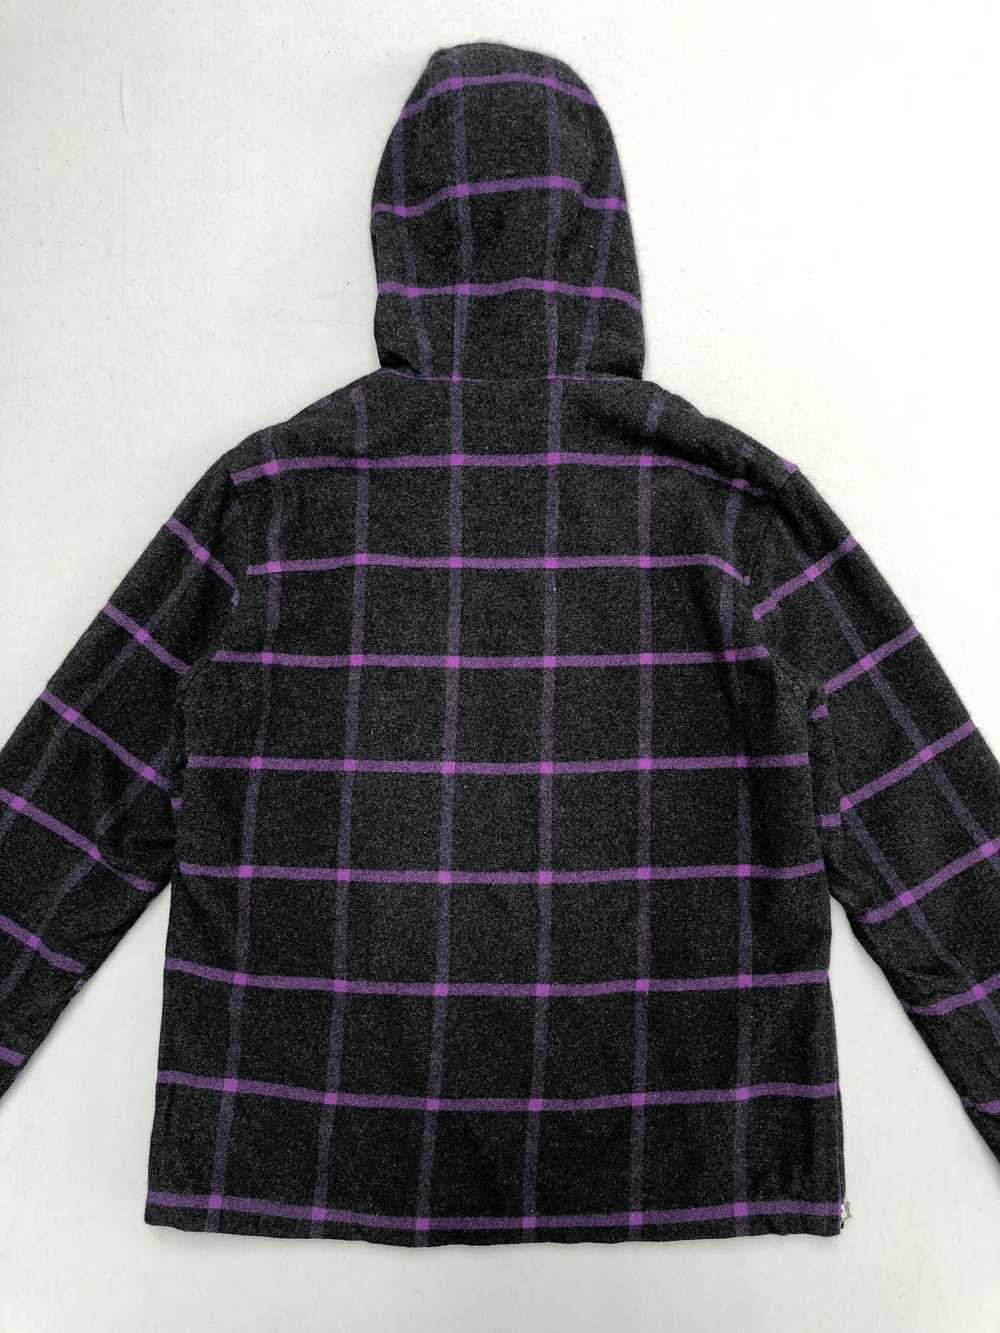 Paul Smith Plaid Tartan Hooded Wool Jacket - image 8